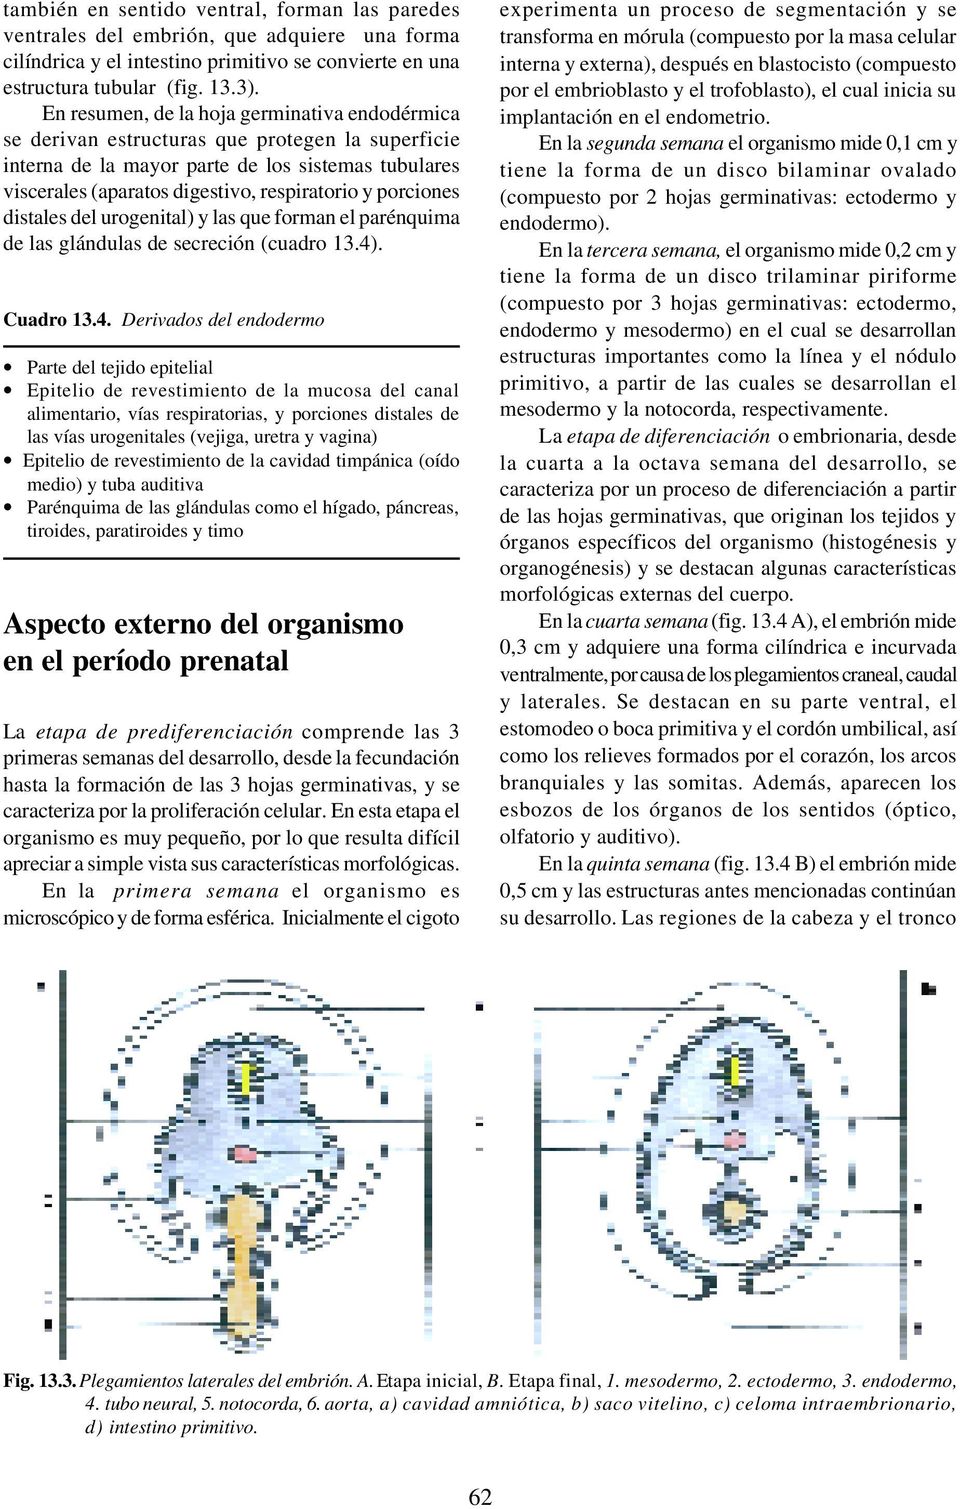 porciones distales del urogenital) y las que forman el parénquima de las glándulas de secreción (cuadro 13.4)